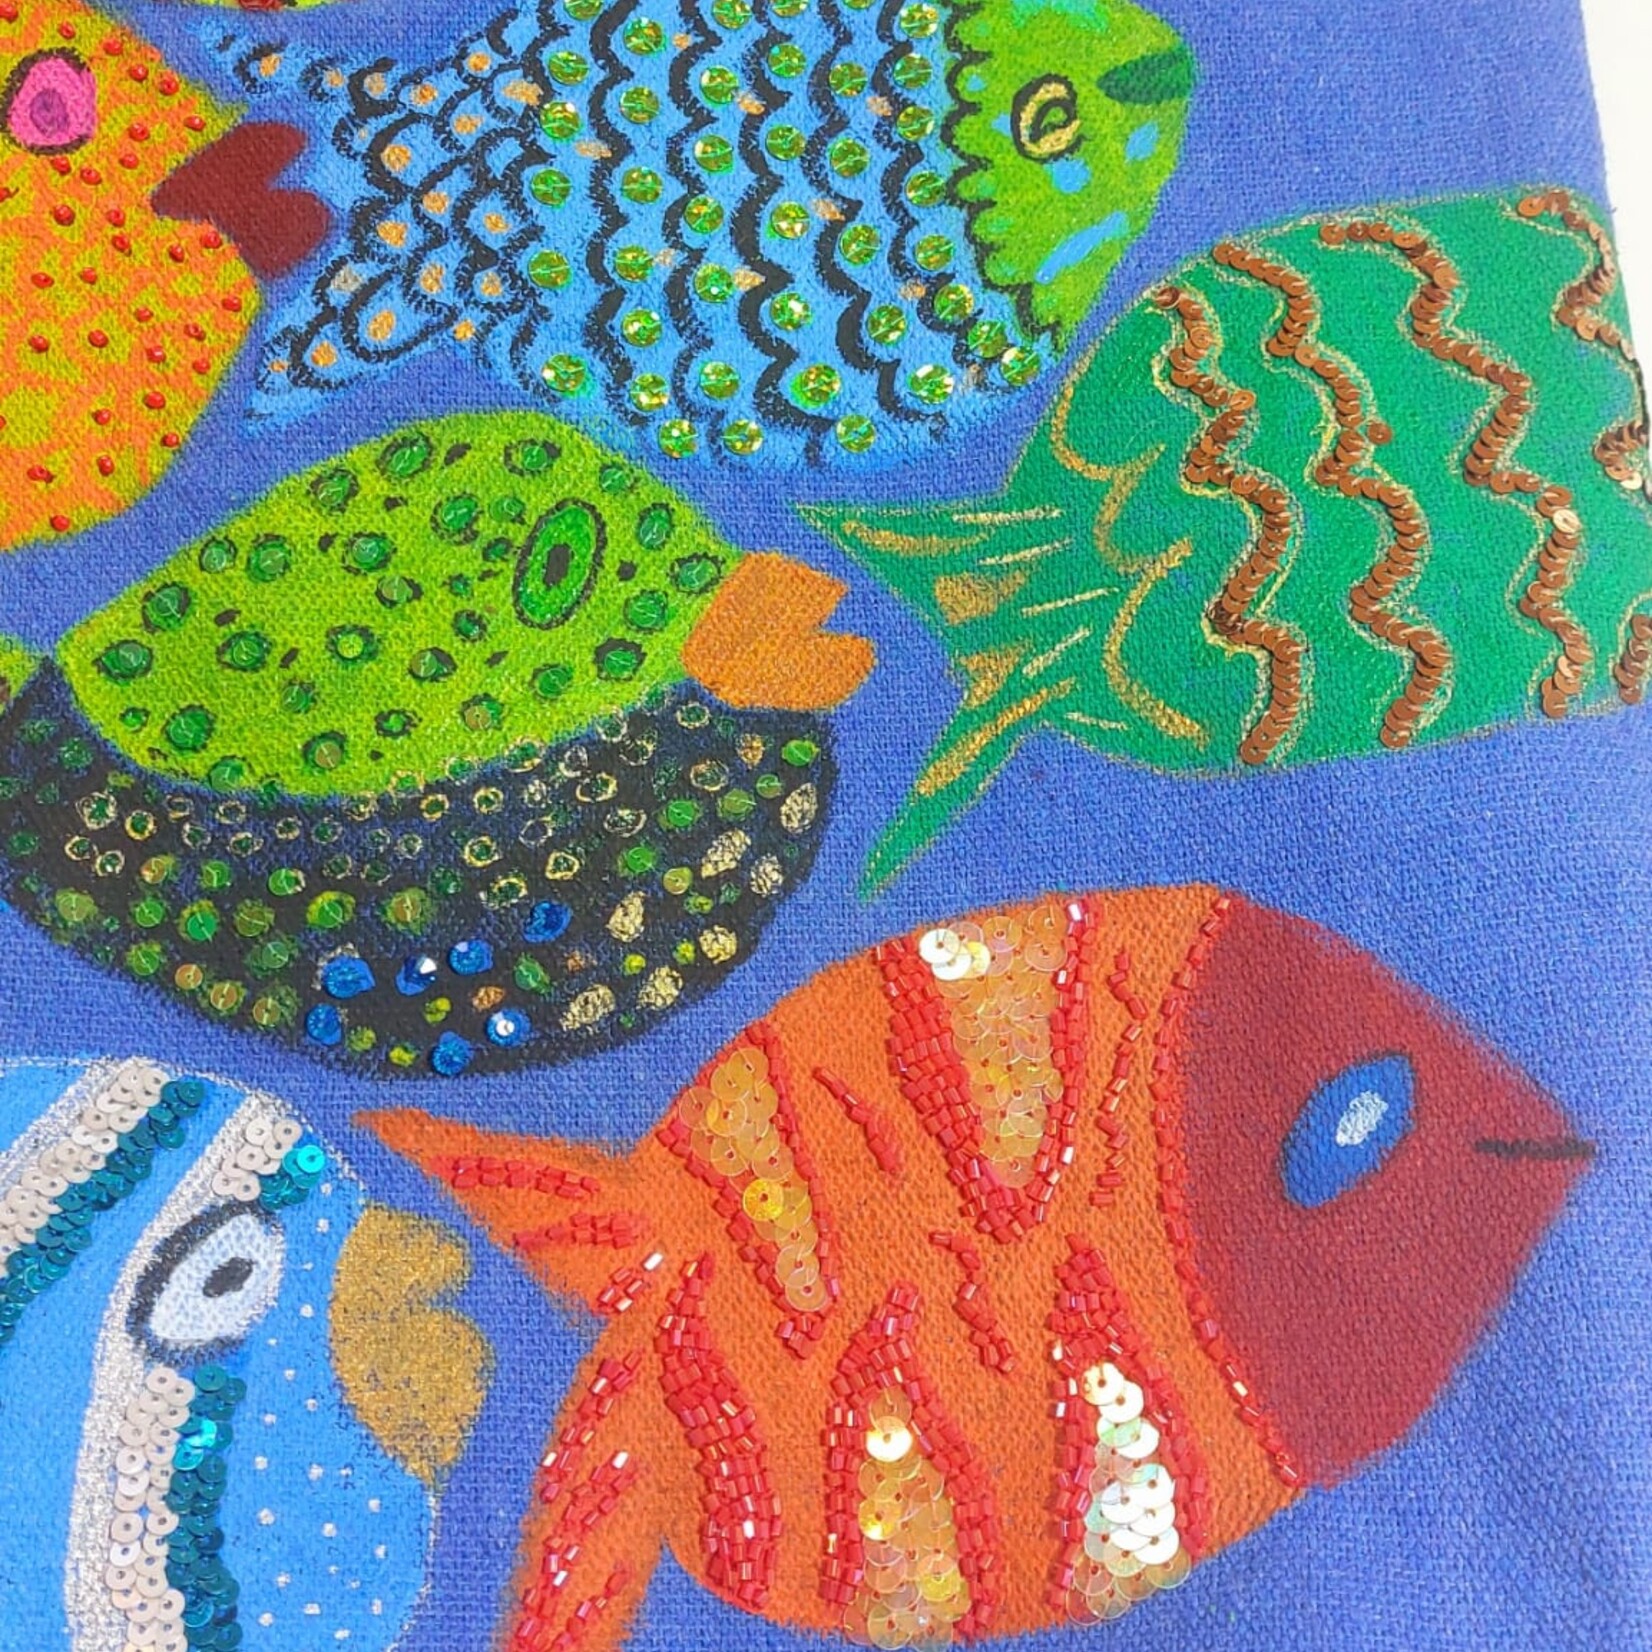 Handmade by Sue Tas met tropische vissen